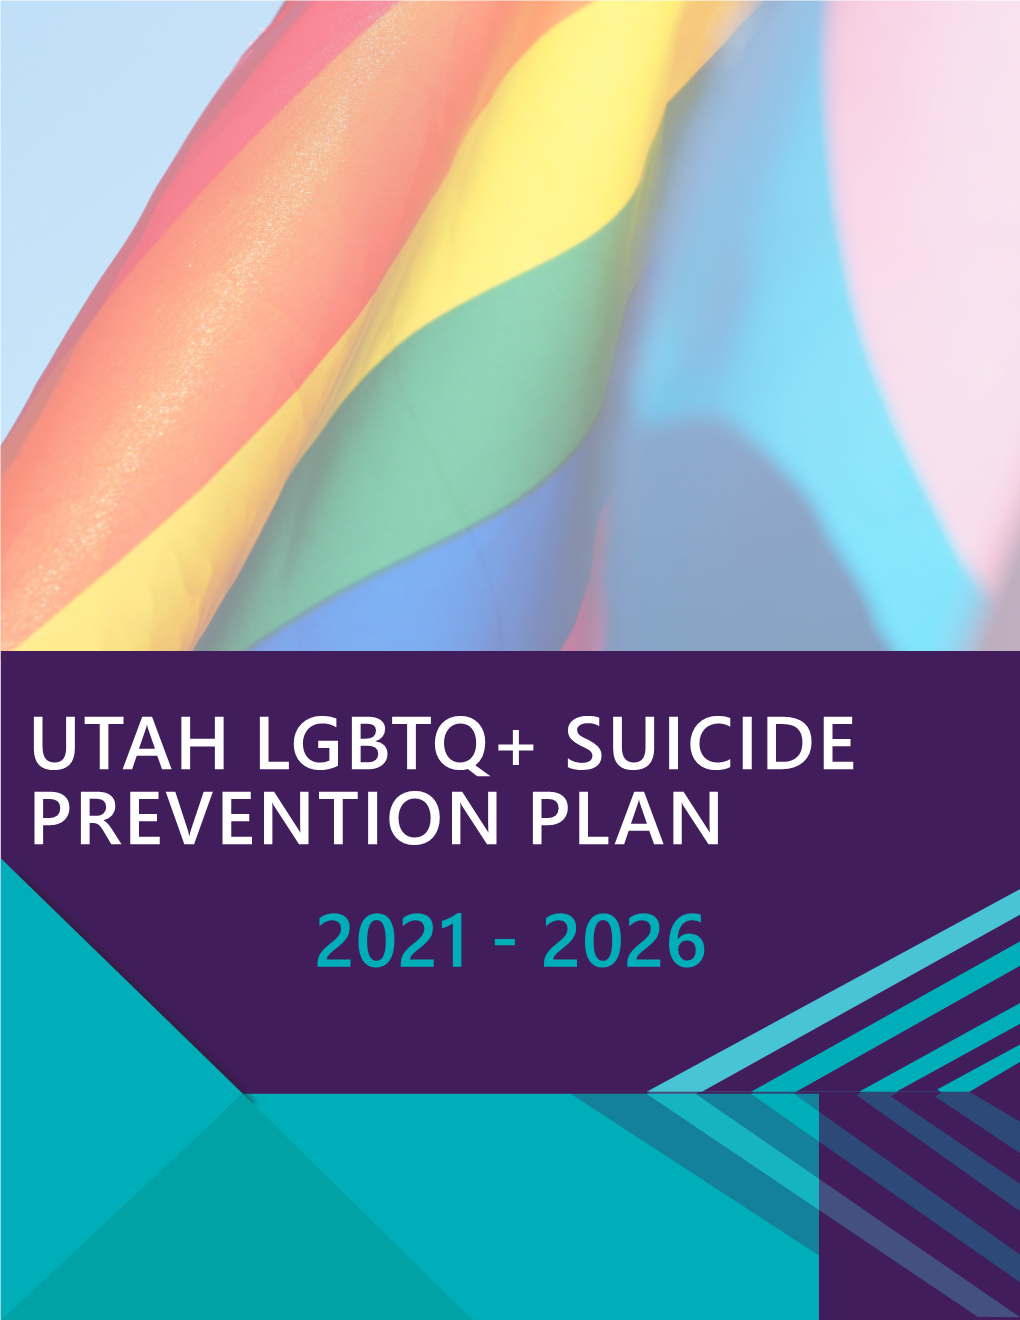 Utah Lgbtq+ Suicide Prevention Plan 2021 - 2026 Contents